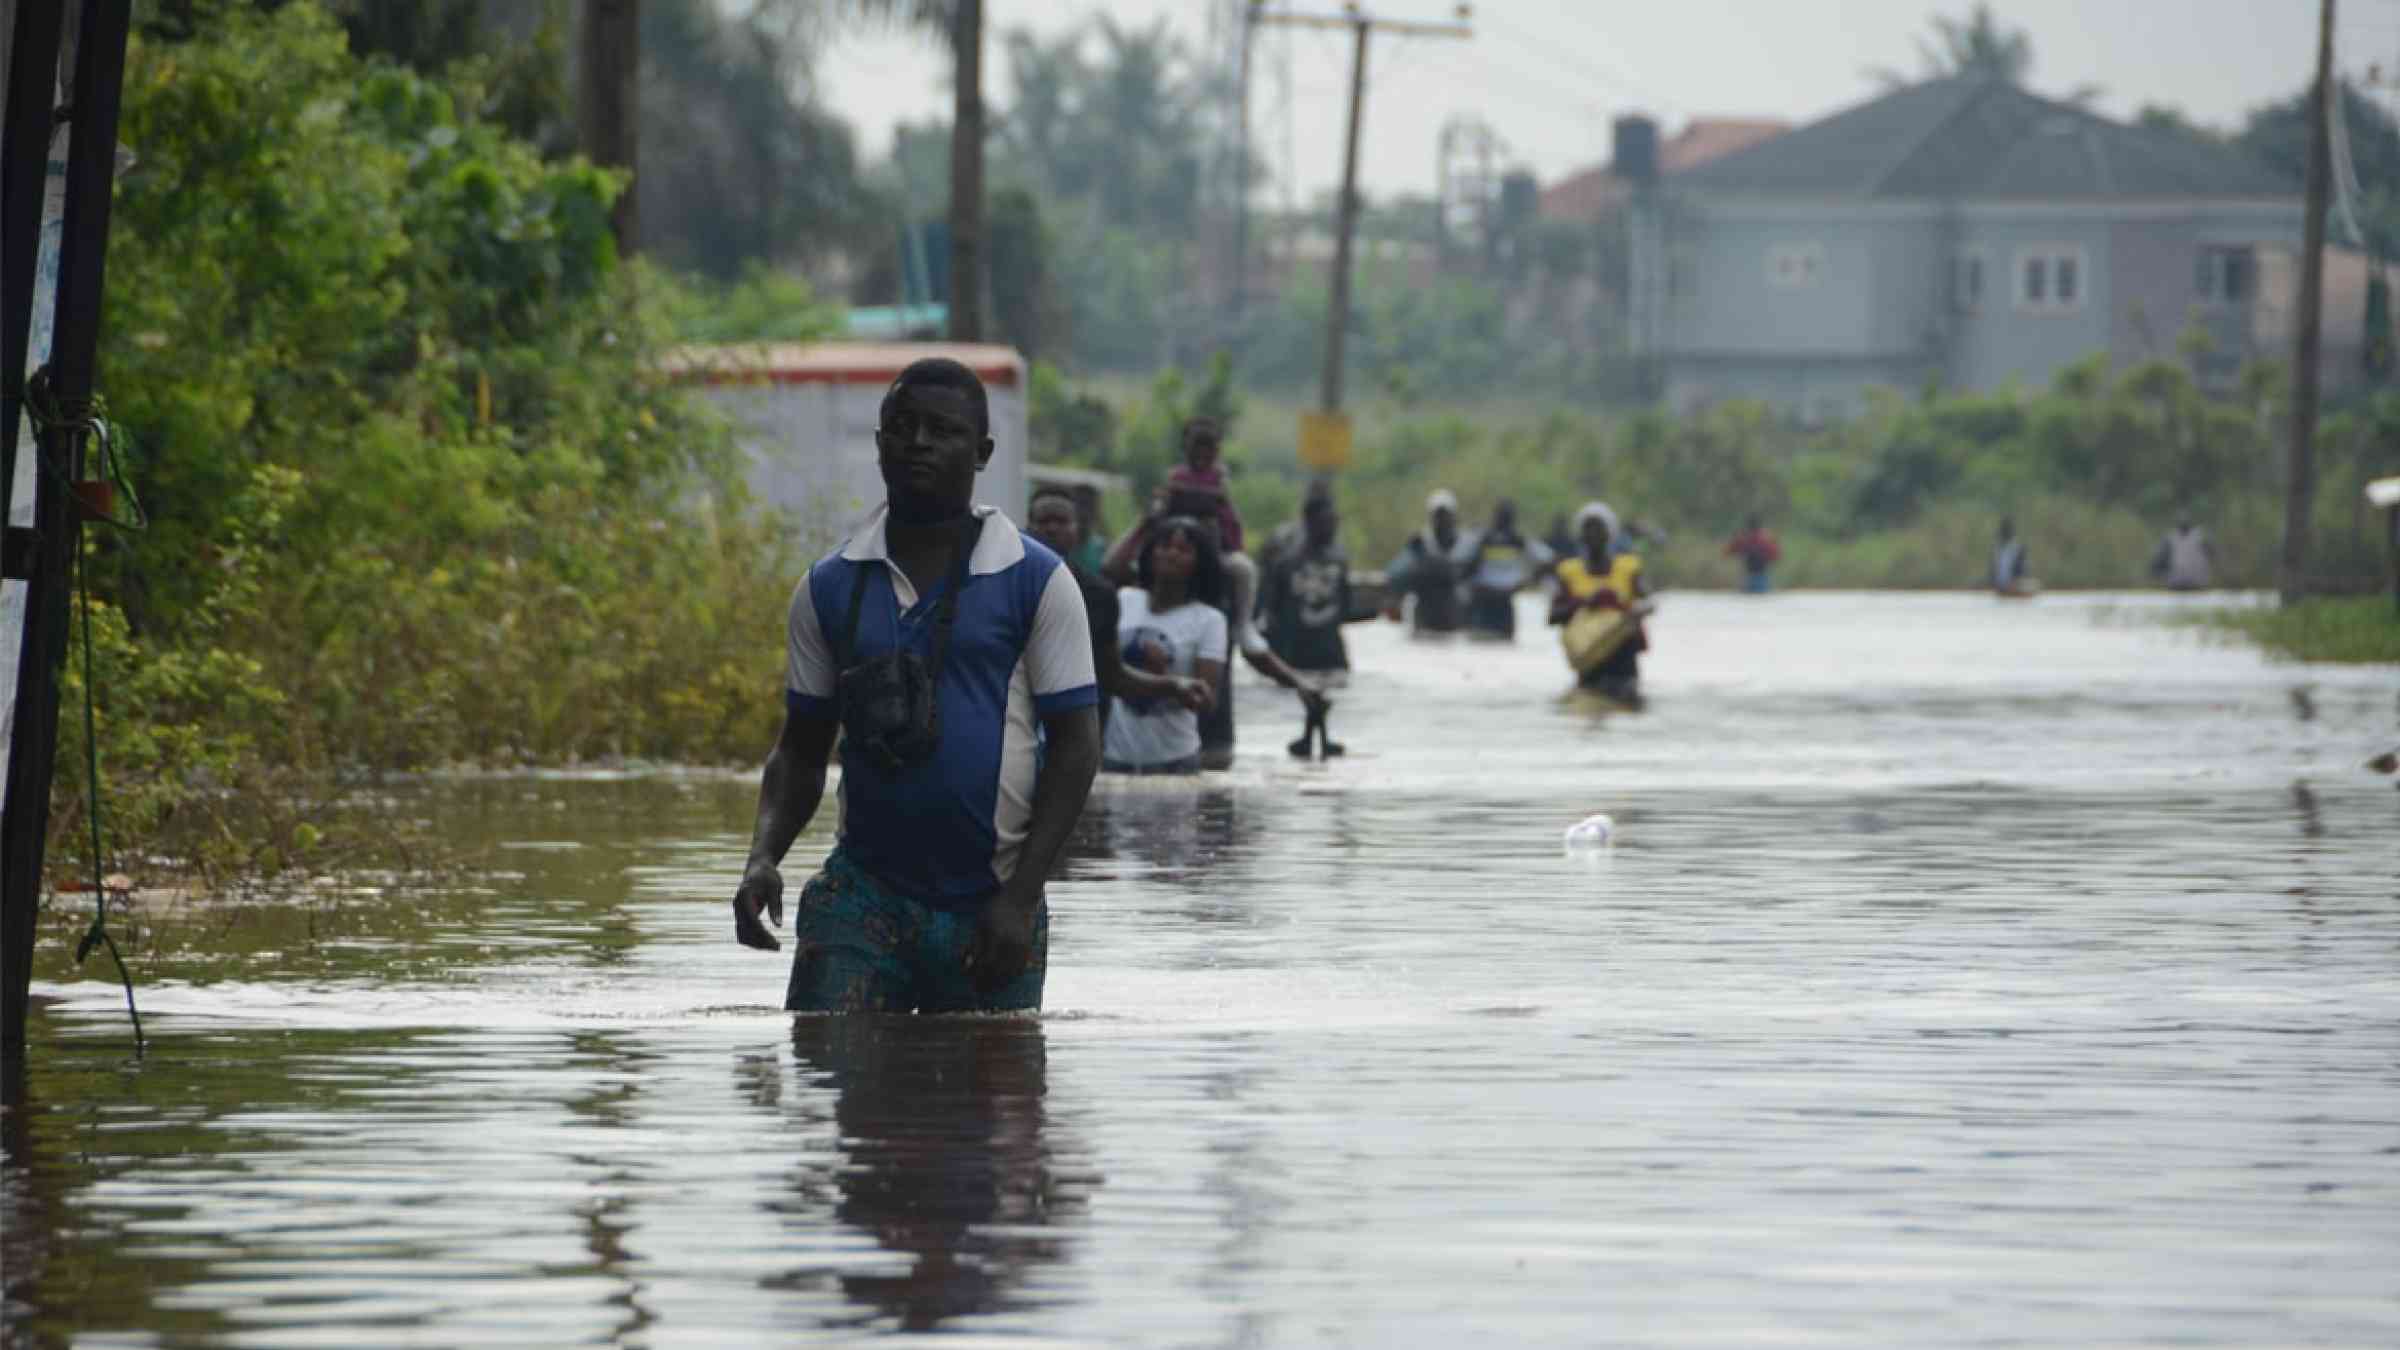 A man walks through a flash flood in Wawa, Nigeria (2019)